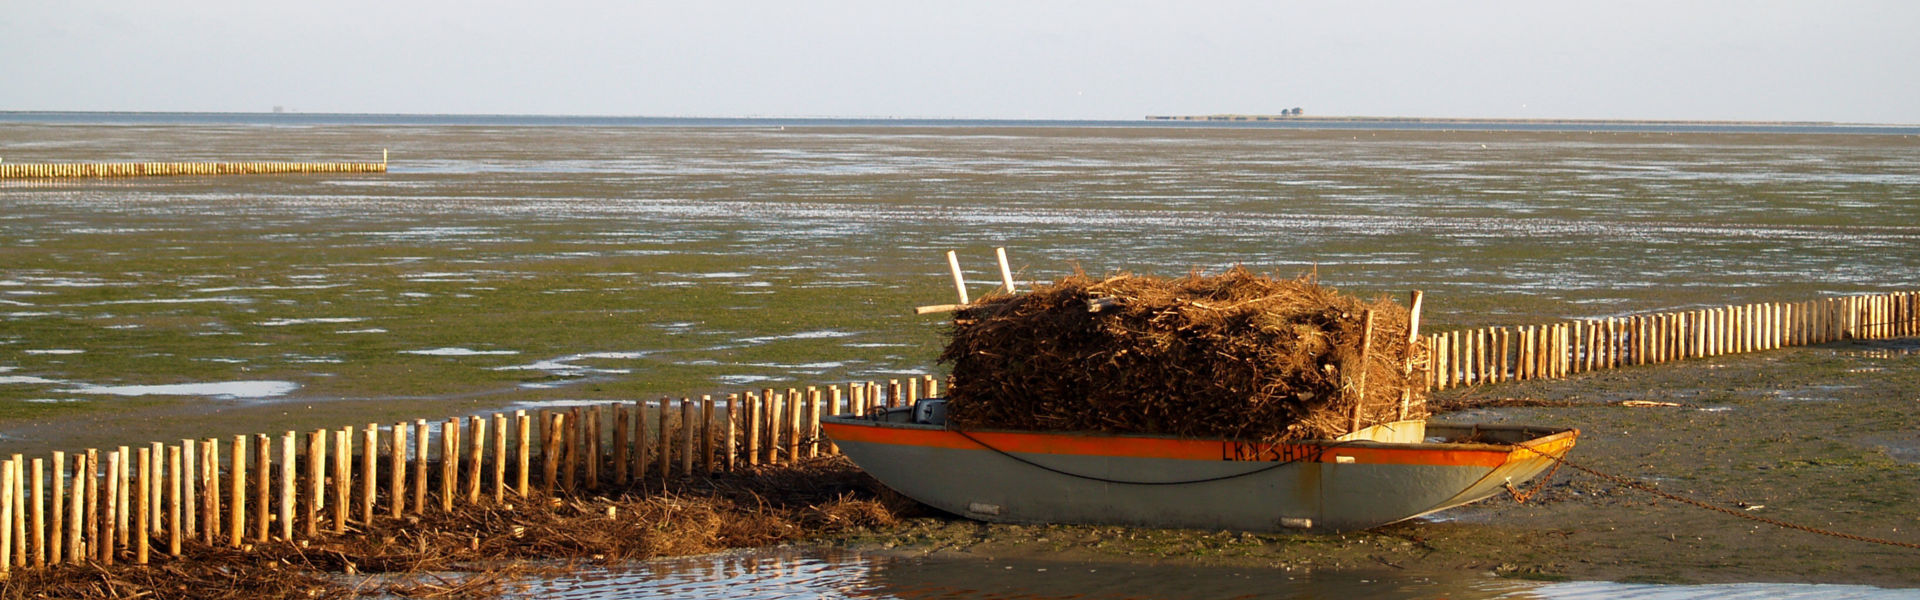 Schute mit Reisig beladen, um Küstenschutzmaßnahmen durchzufrühren